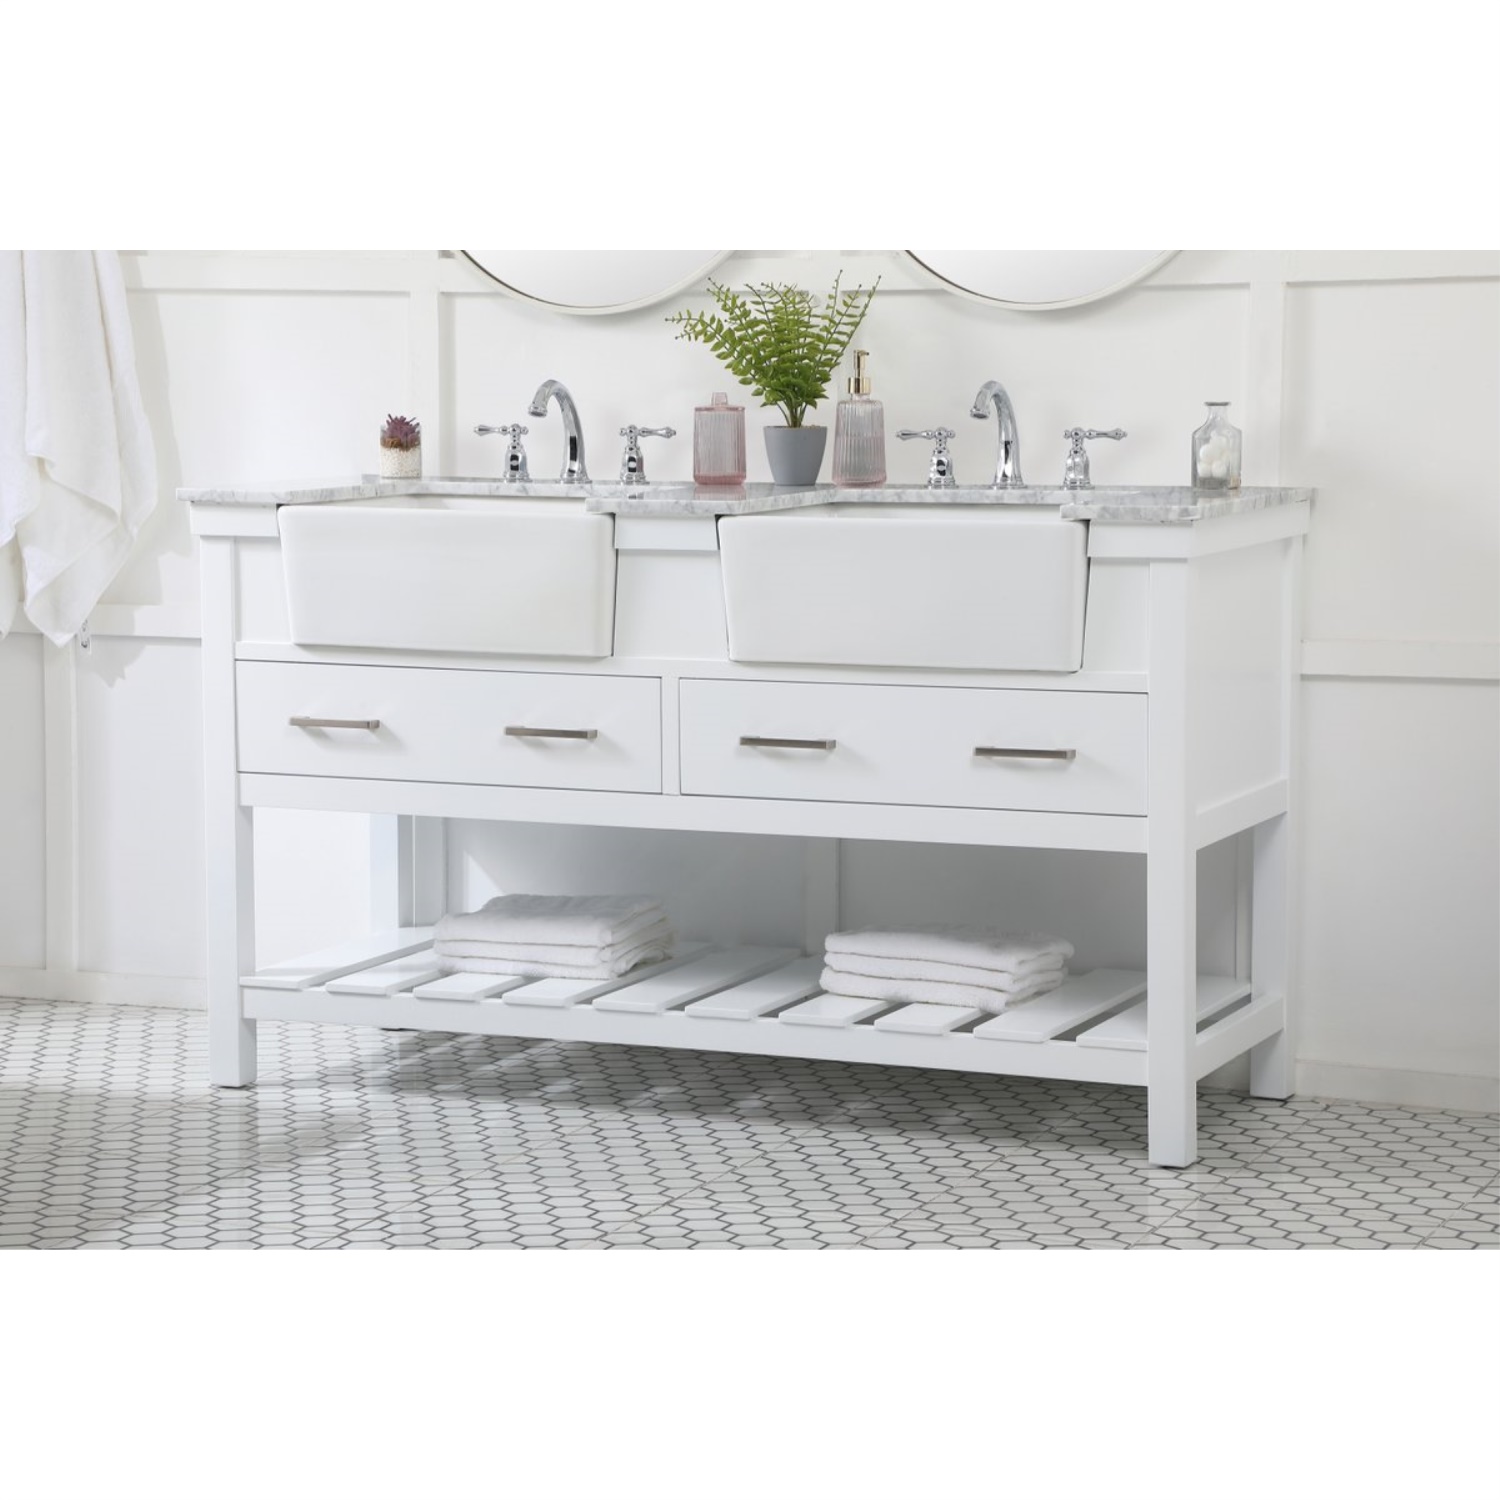 Elegant Decor 60 inch double bathroom vanity in white